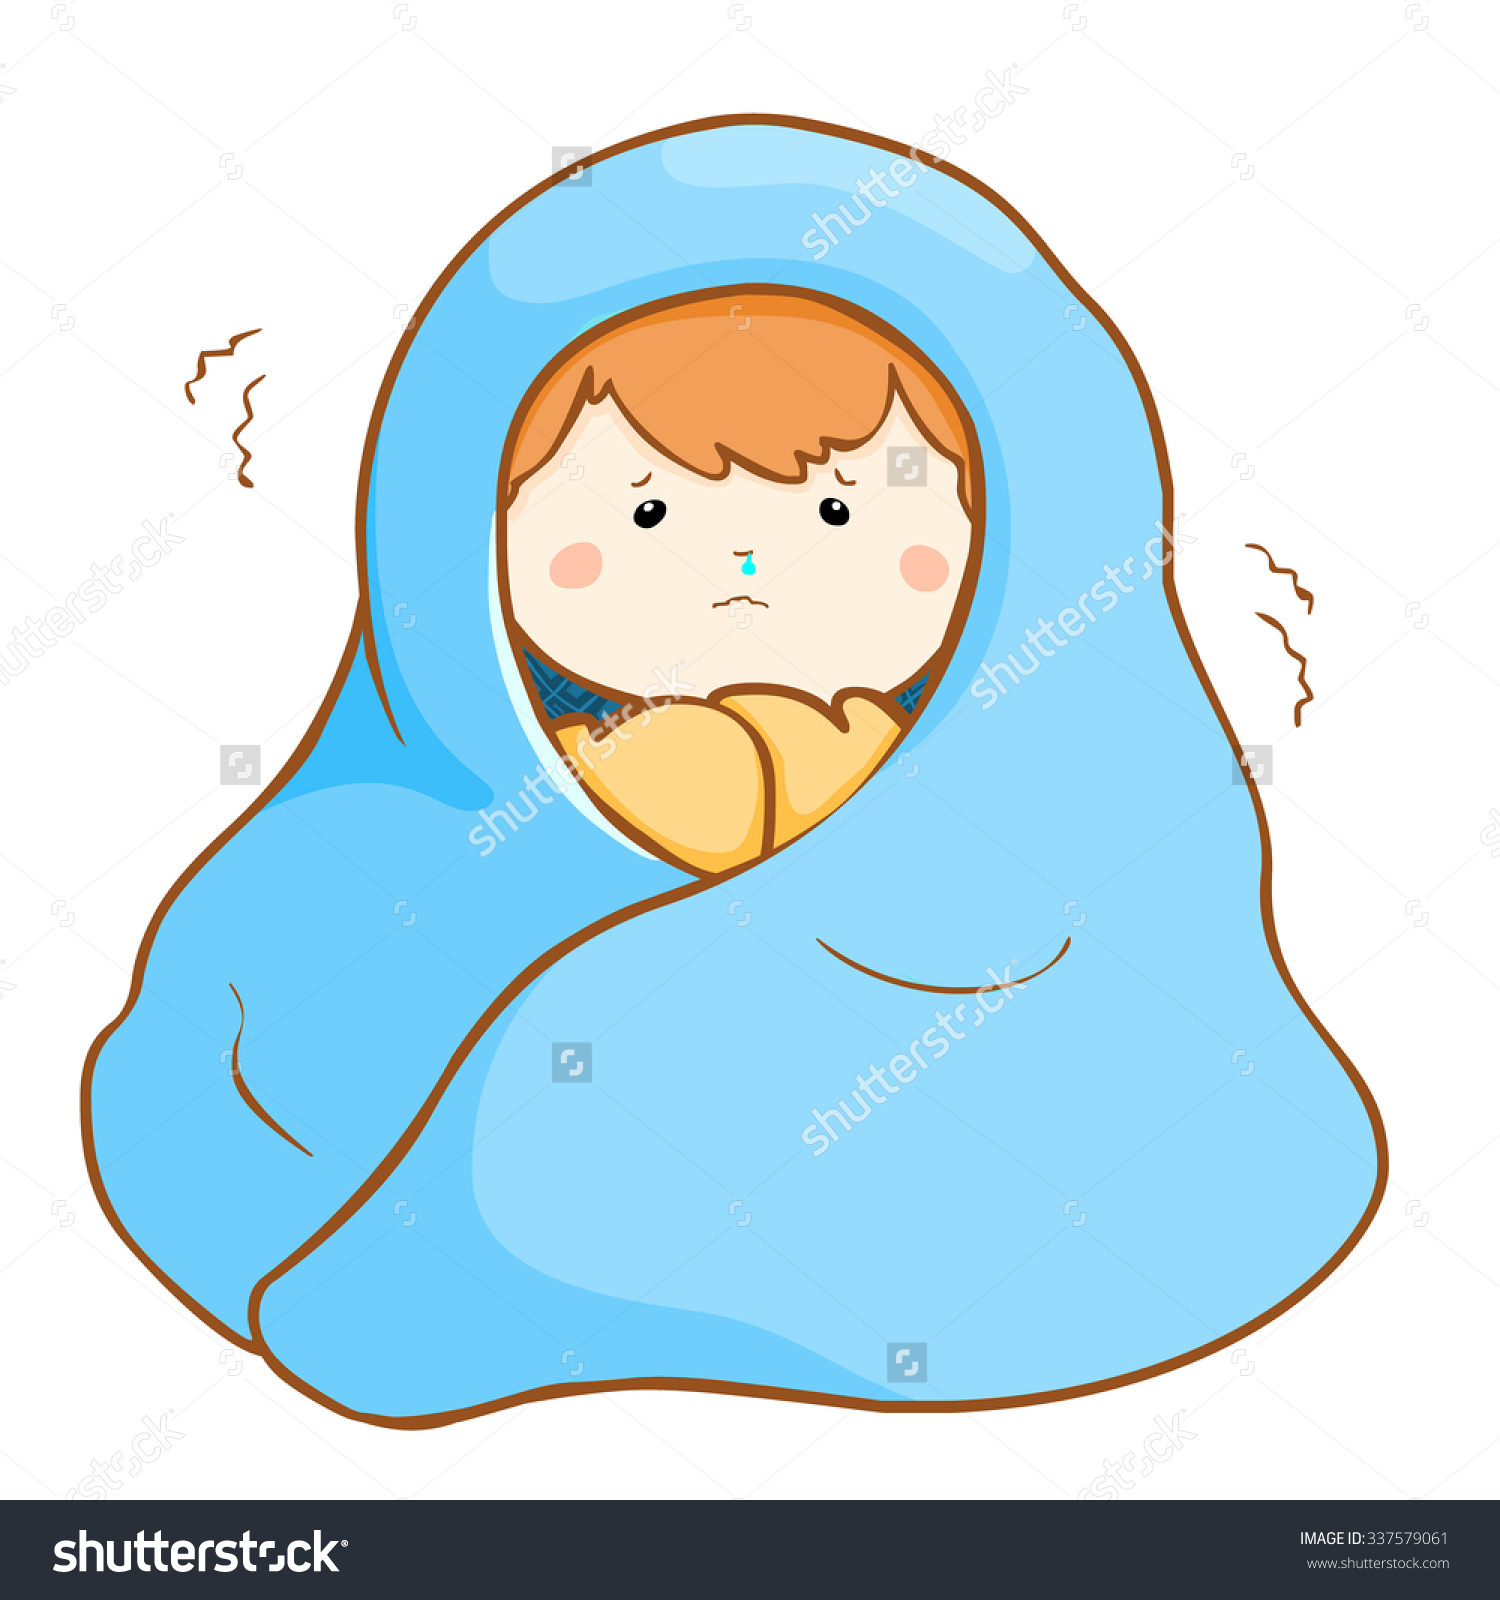 sleeping clipart warm blanket